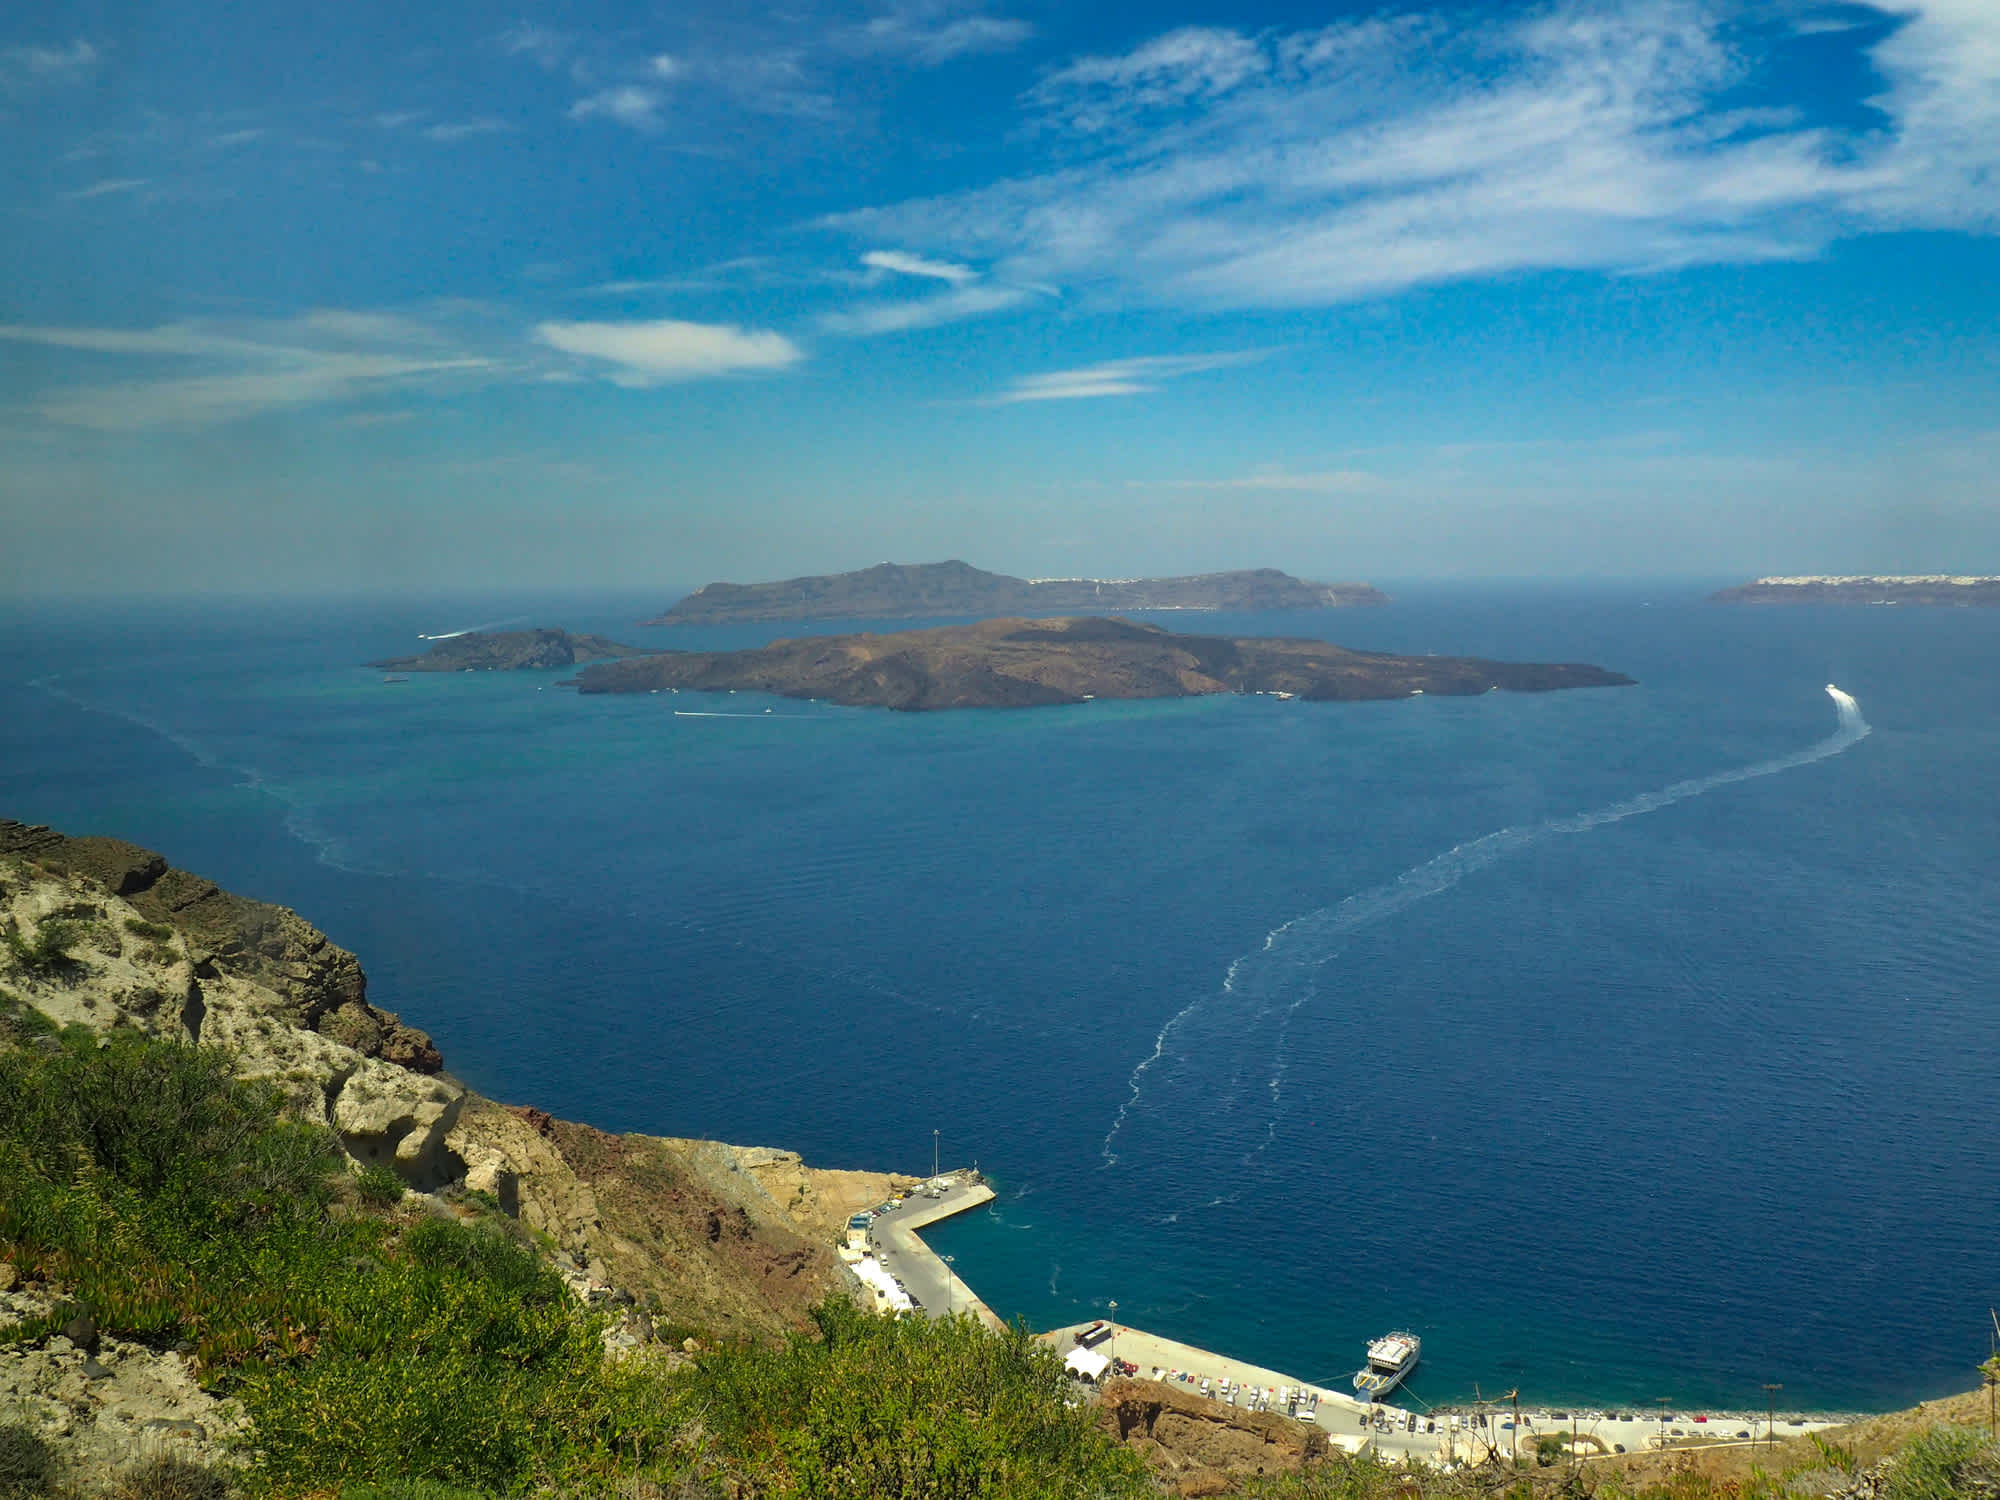 Beautiful view on the sea of Santorini island in Greece